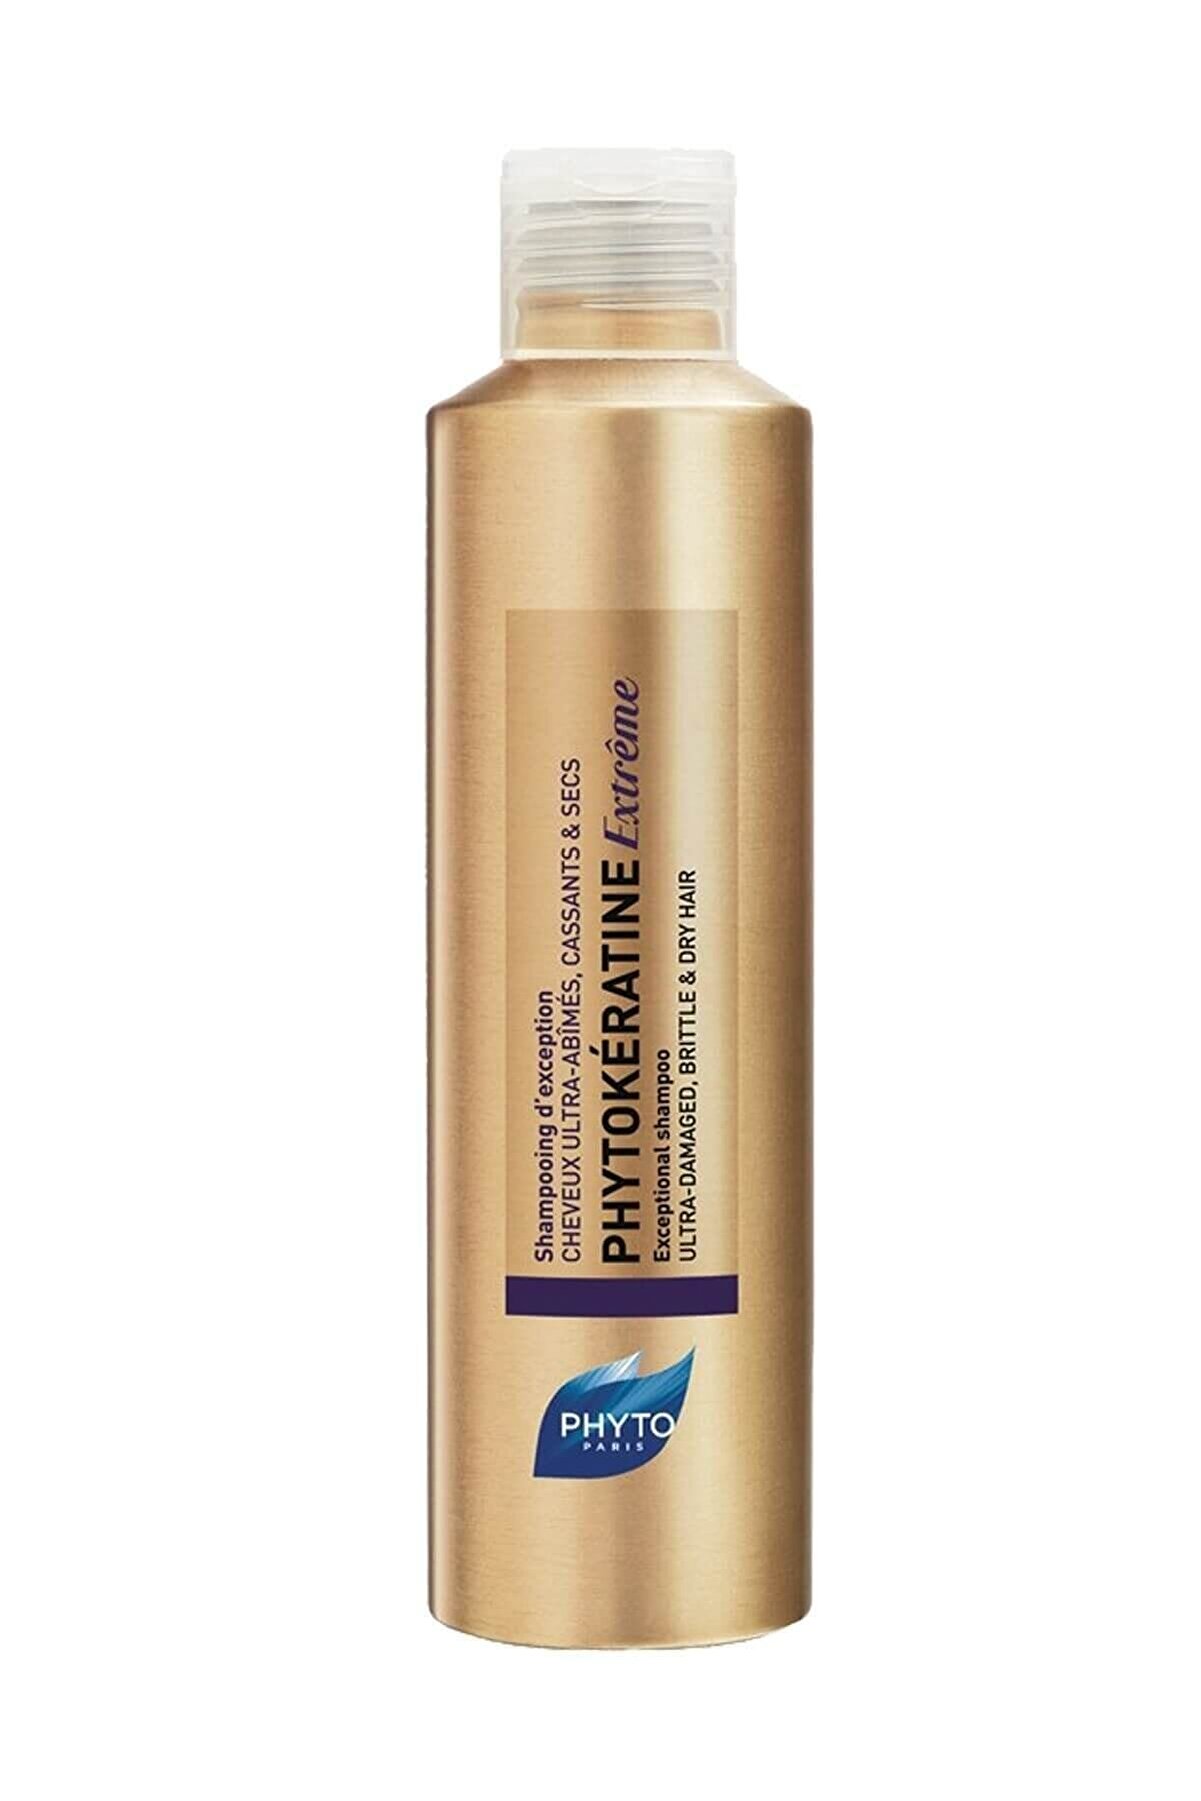 Phyto Phytokeratine Extreme Shampoo Çok Yıpranmış Saçlar için Olağanüstü Bakım Şampuanı